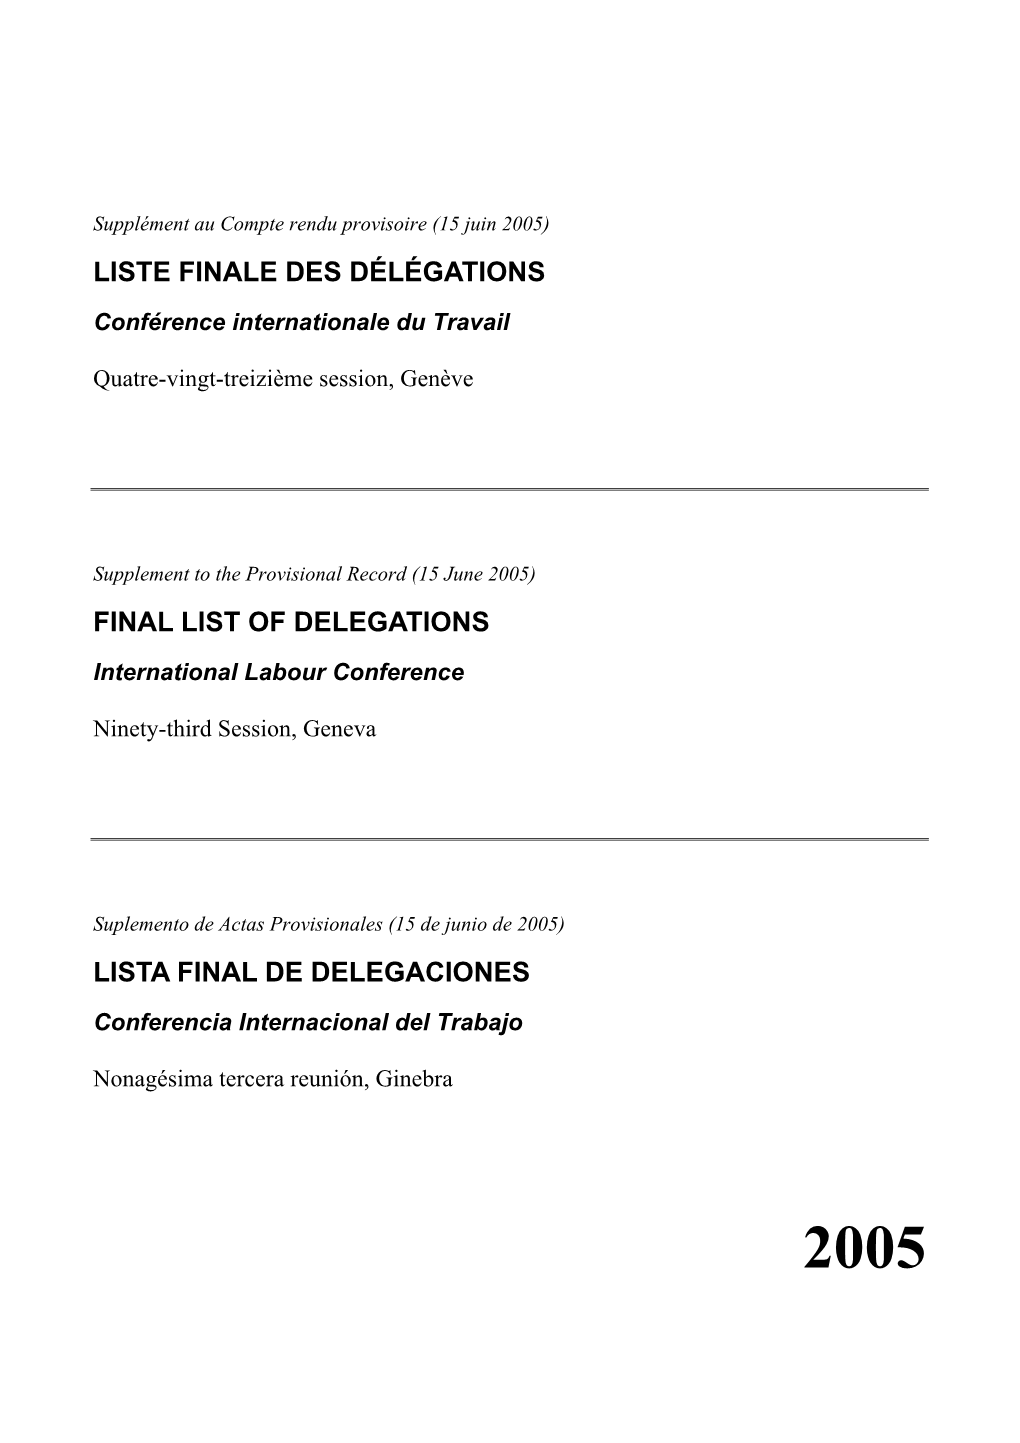 Final List of Delegations